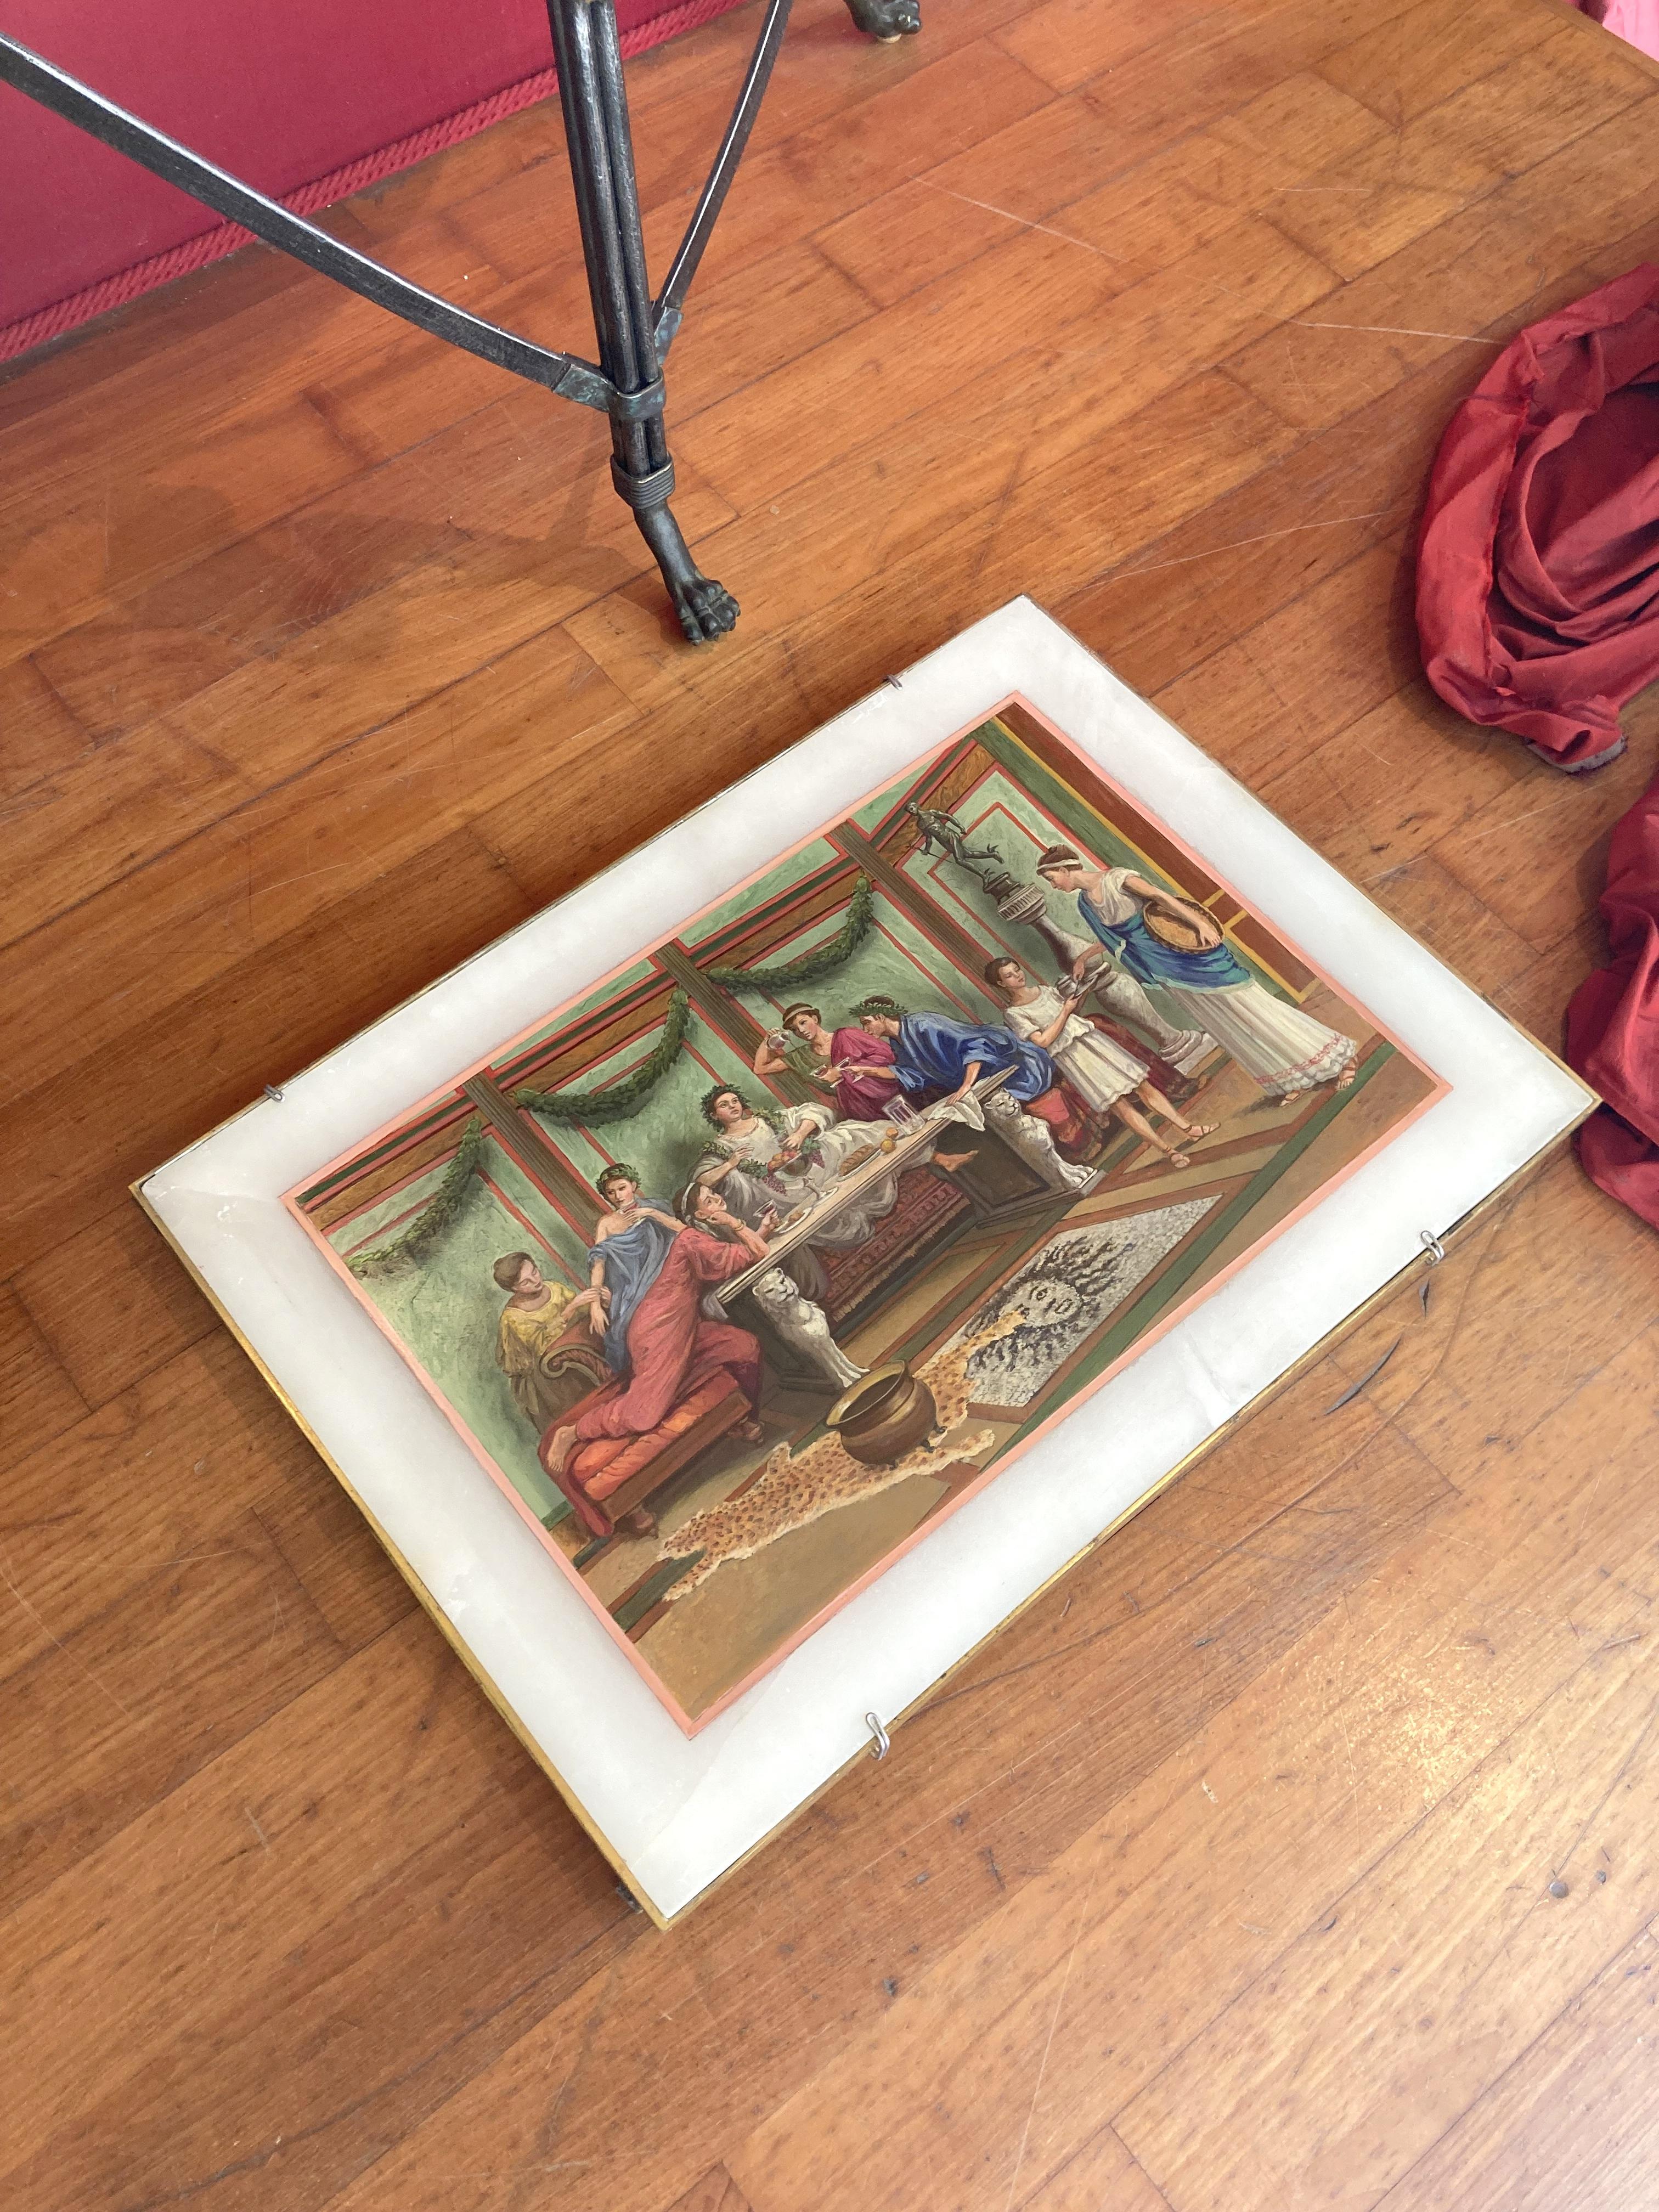 Cette huile sur albâtre italienne du XIXe siècle représente un intérieur opulent de style néoclassique pompéien avec des gens en train de festoyer.
La scène intérieure figurative est peinte sur une dalle d'albâtre rectangulaire et logée dans un